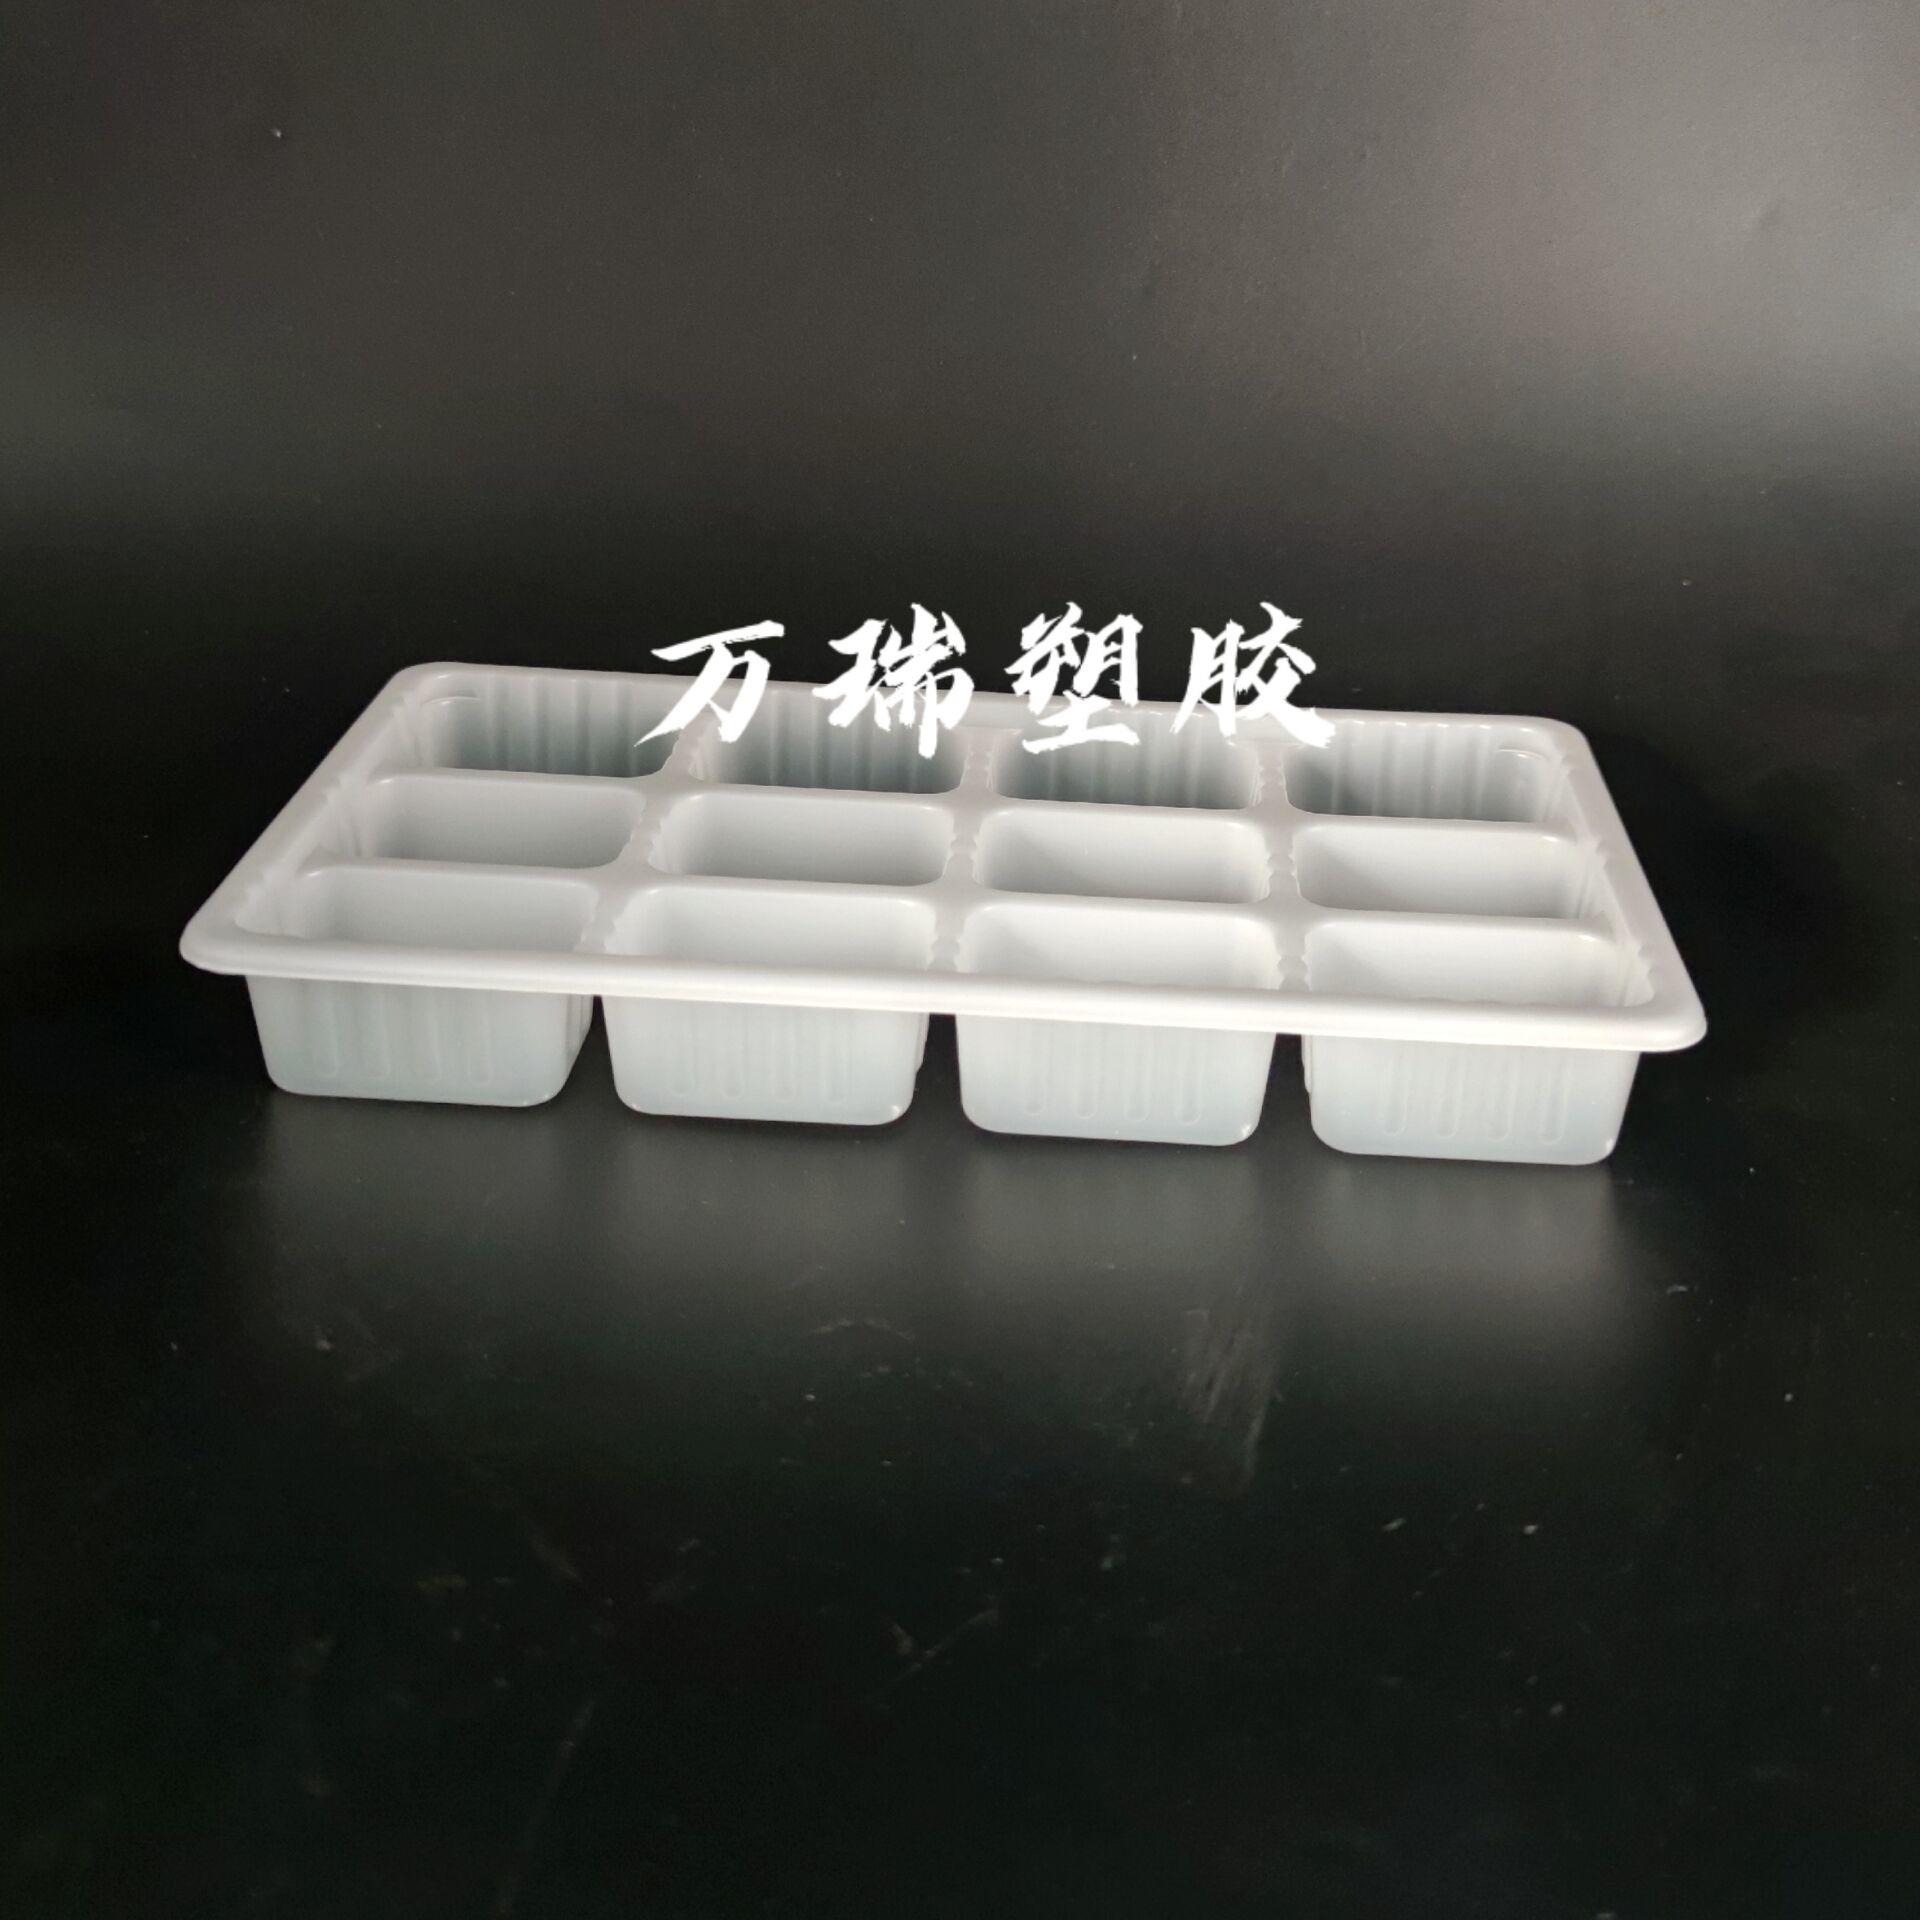 万瑞厂家直供一次性塑料盒饺子托盒 馄饨托盒  格子图托盒  多格可封口塑料盒 PP塑料盒